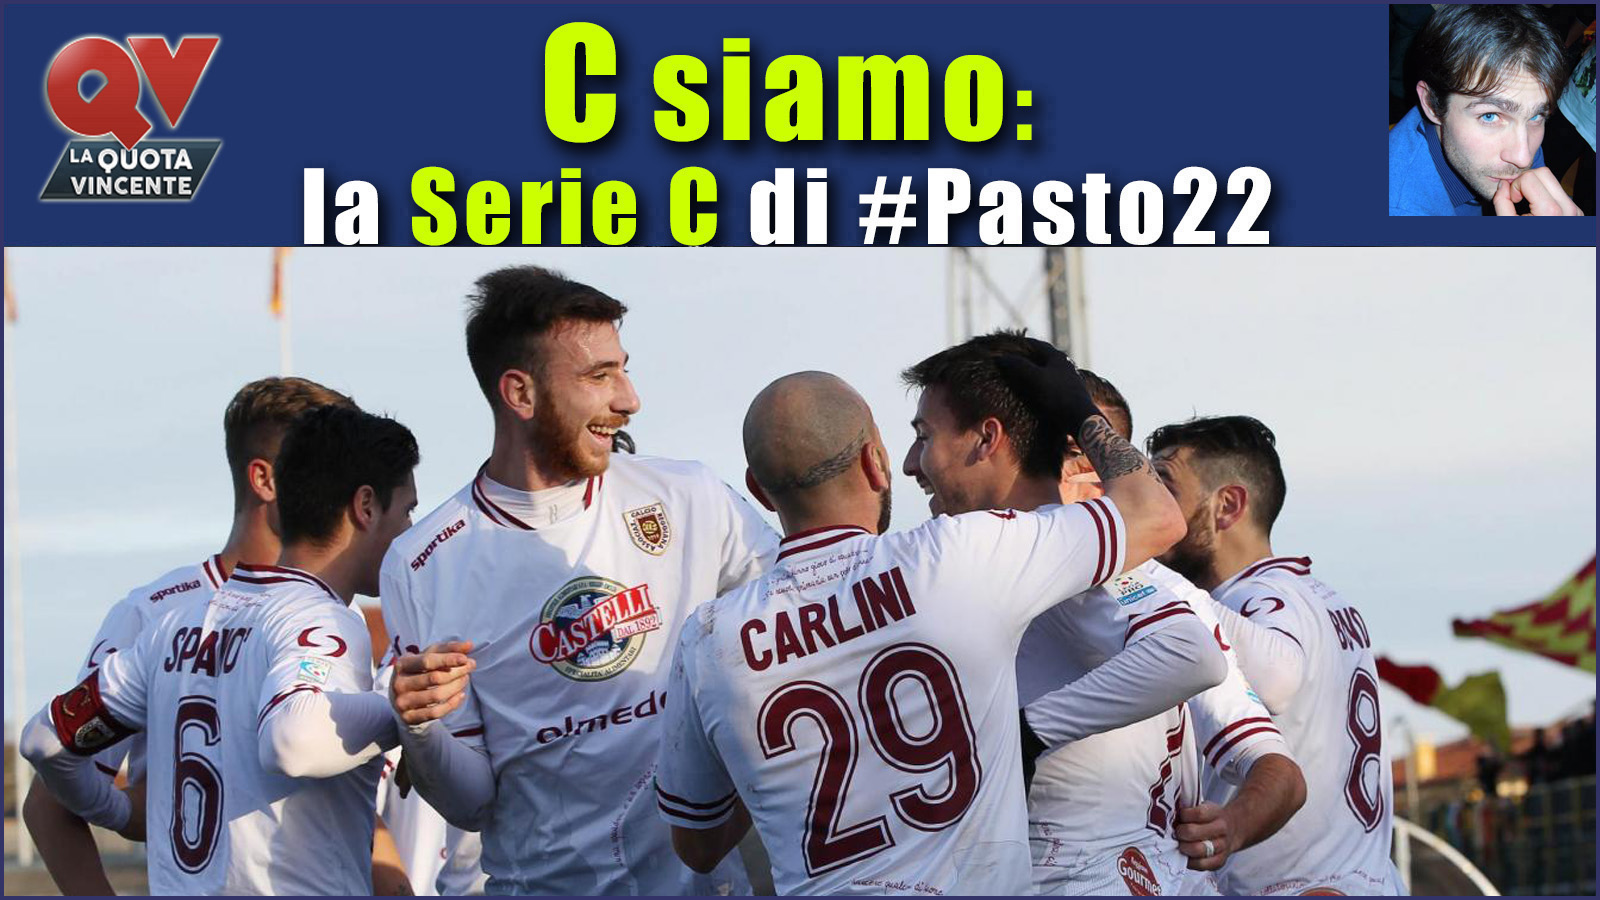 Pronostici Serie C sabato 17 febbraio: #Csiamo, il blog di #Pasto22